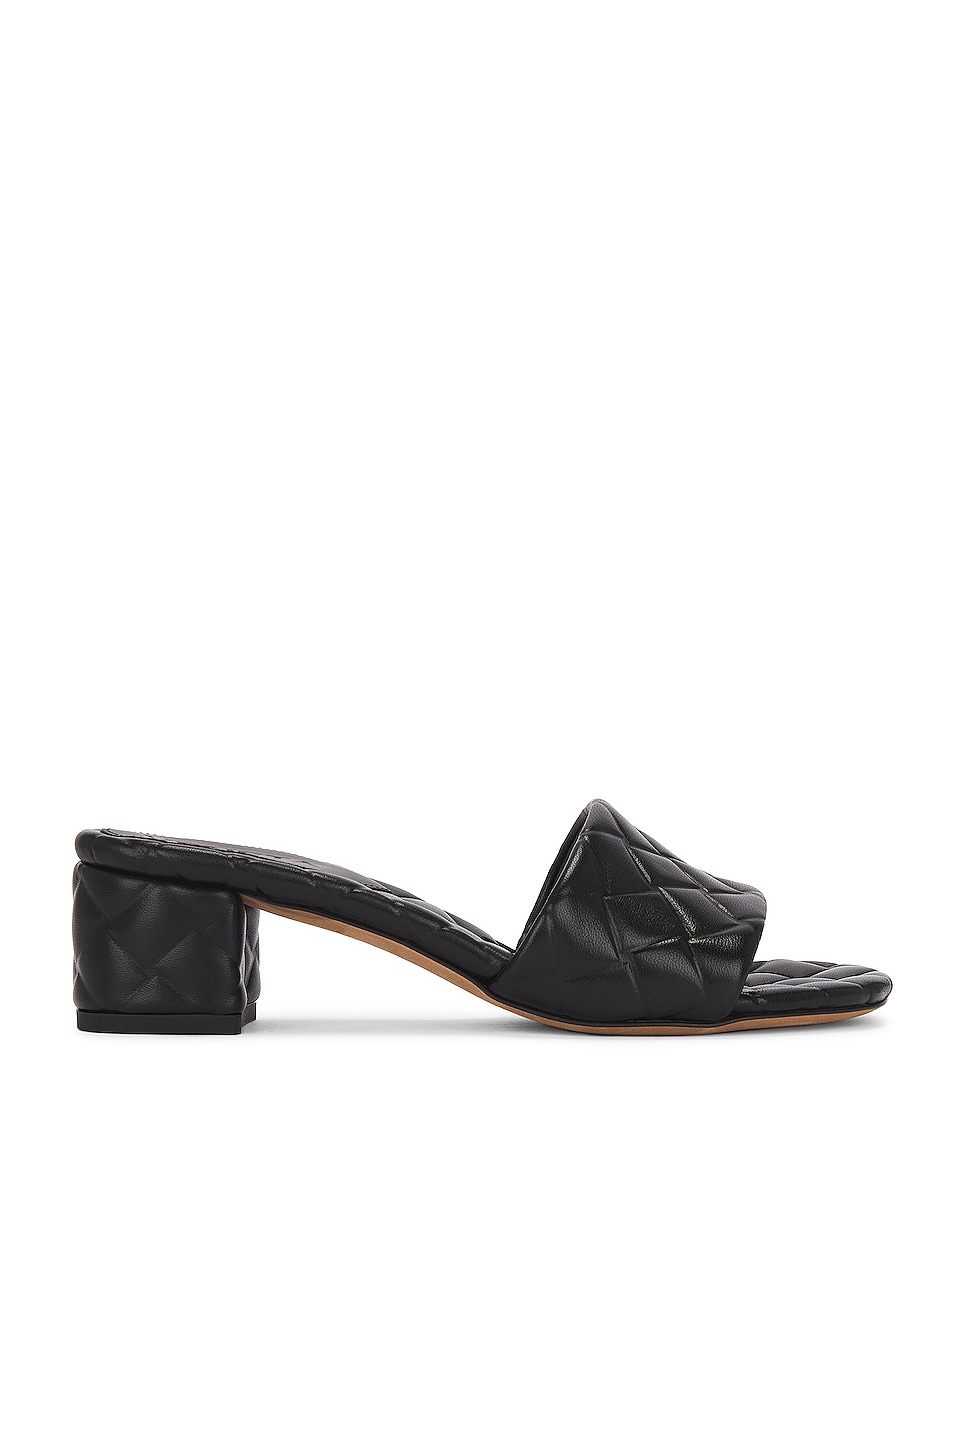 Image 1 of Bottega Veneta Mule Sandal in Black